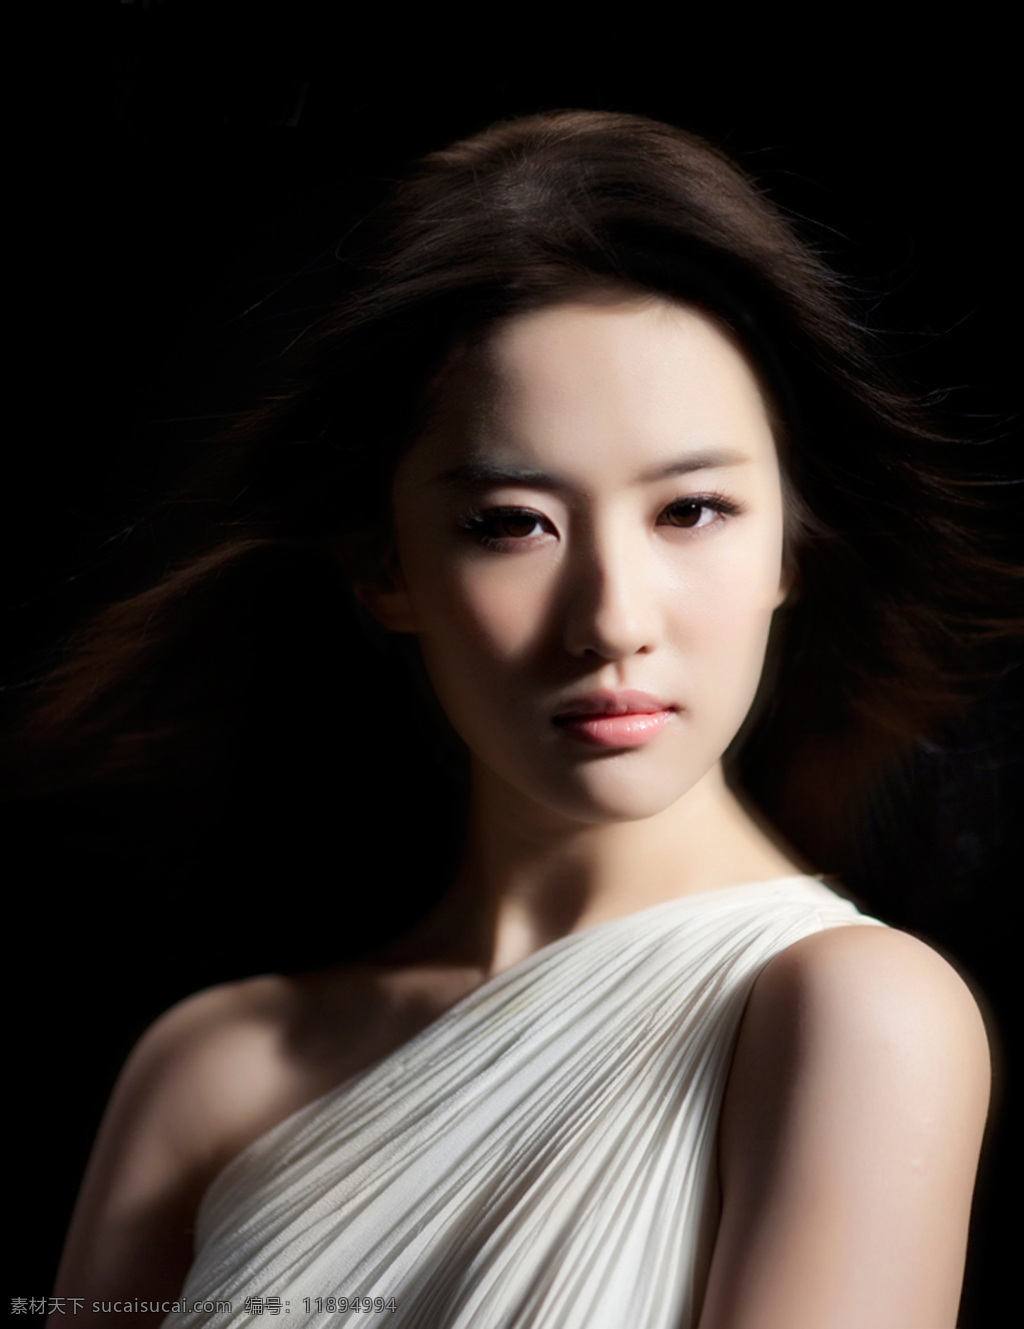 刘亦菲 美女 唯美 歌手 倩女幽魂 人物图库 明星偶像 摄影图库